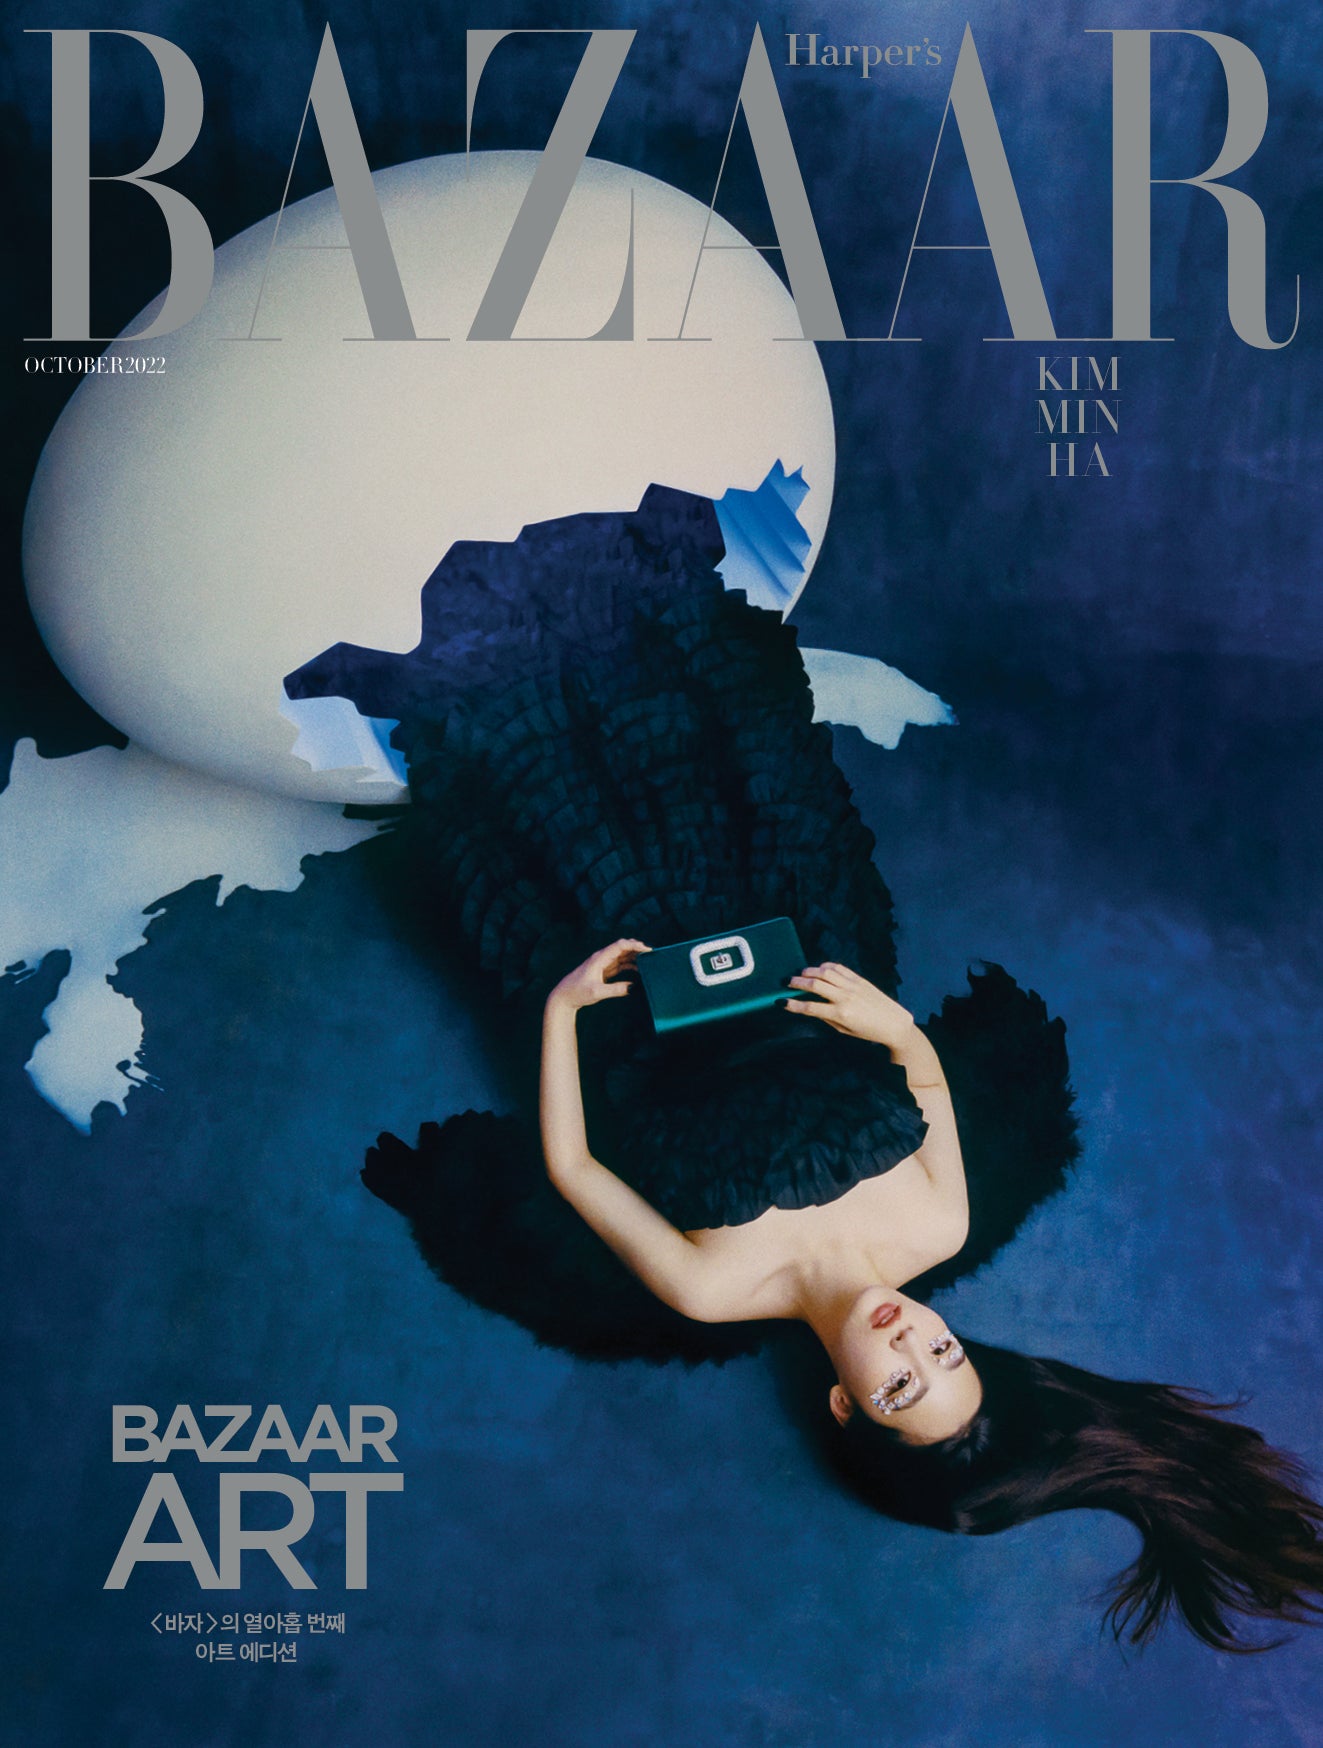 Harper's BAZAAR | 2022 OCT. | RANDOM COVER